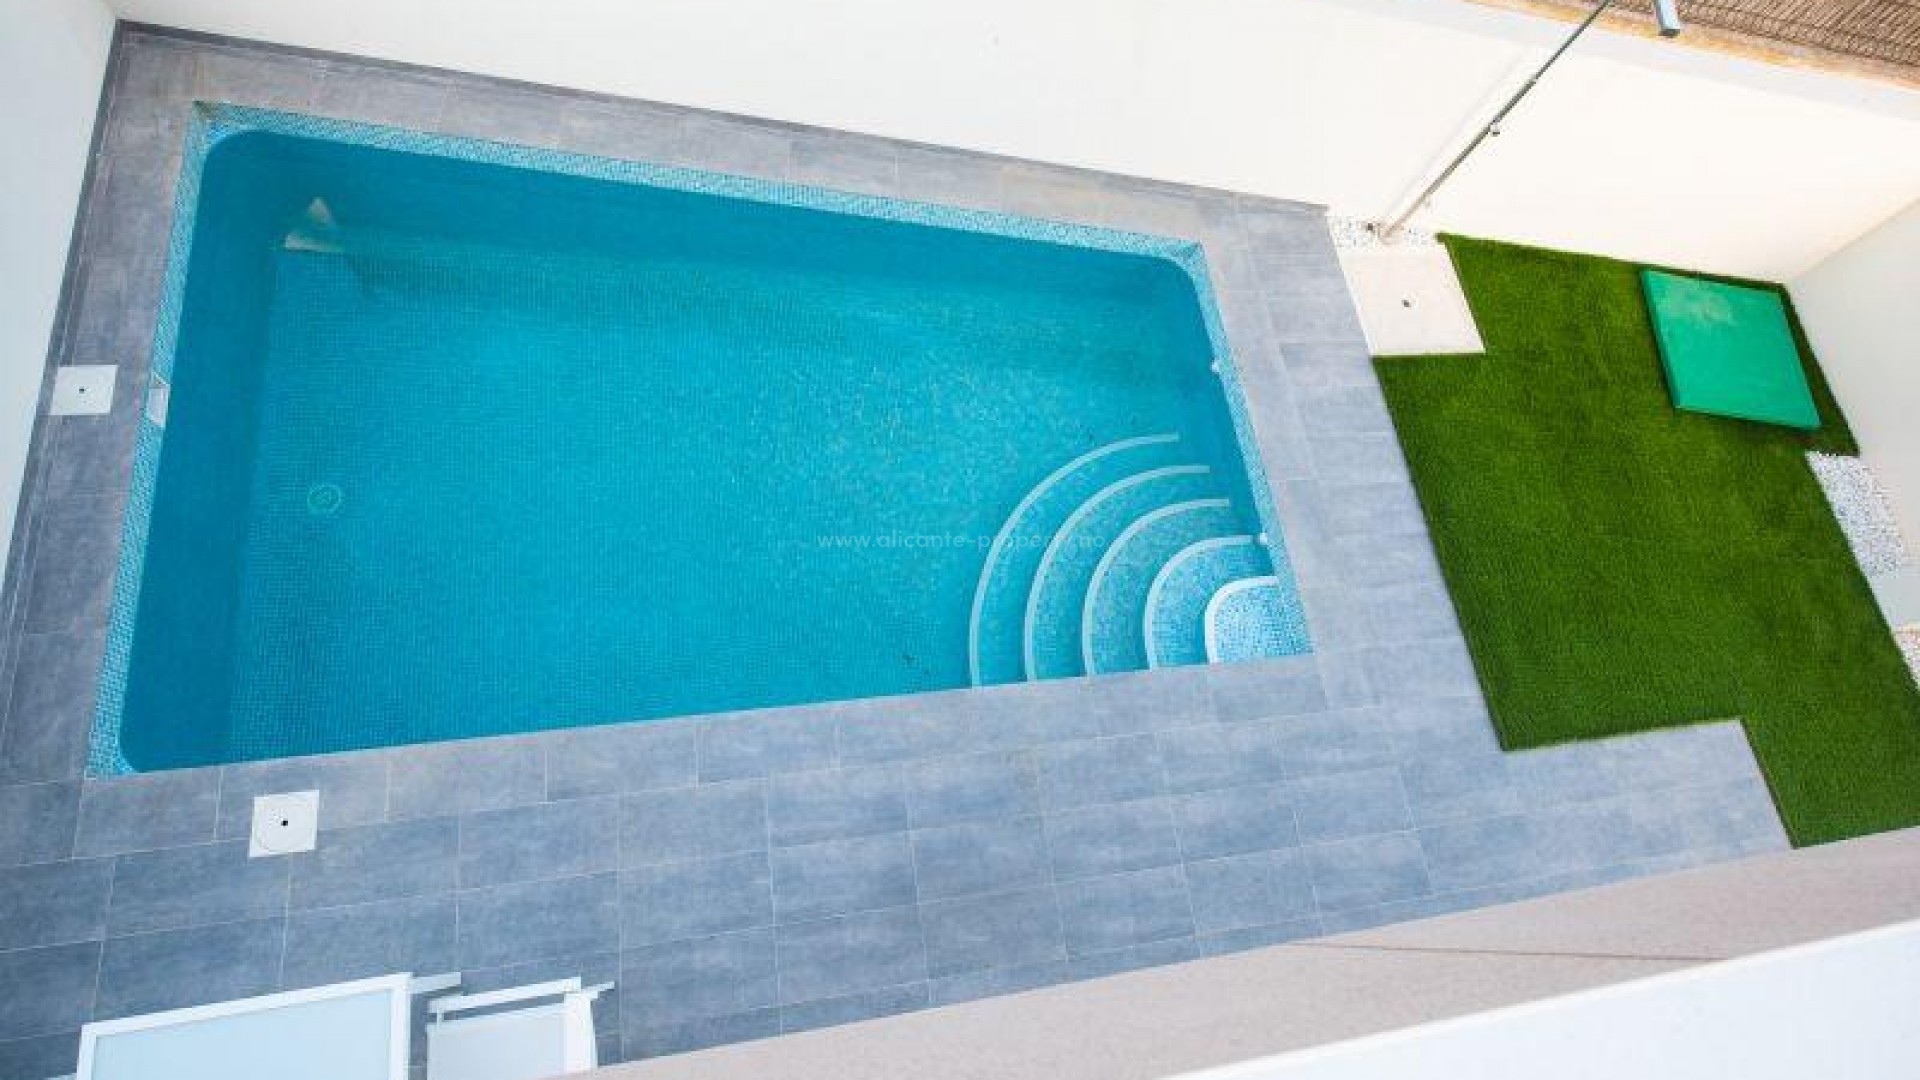 Hus/villaer i Los Montesinos, Alicante,3 soverom, 2 bad,1 toalett, privat basseng, solarium, terrasse. Nær Torrevieja, Guaradamar og golfbaner